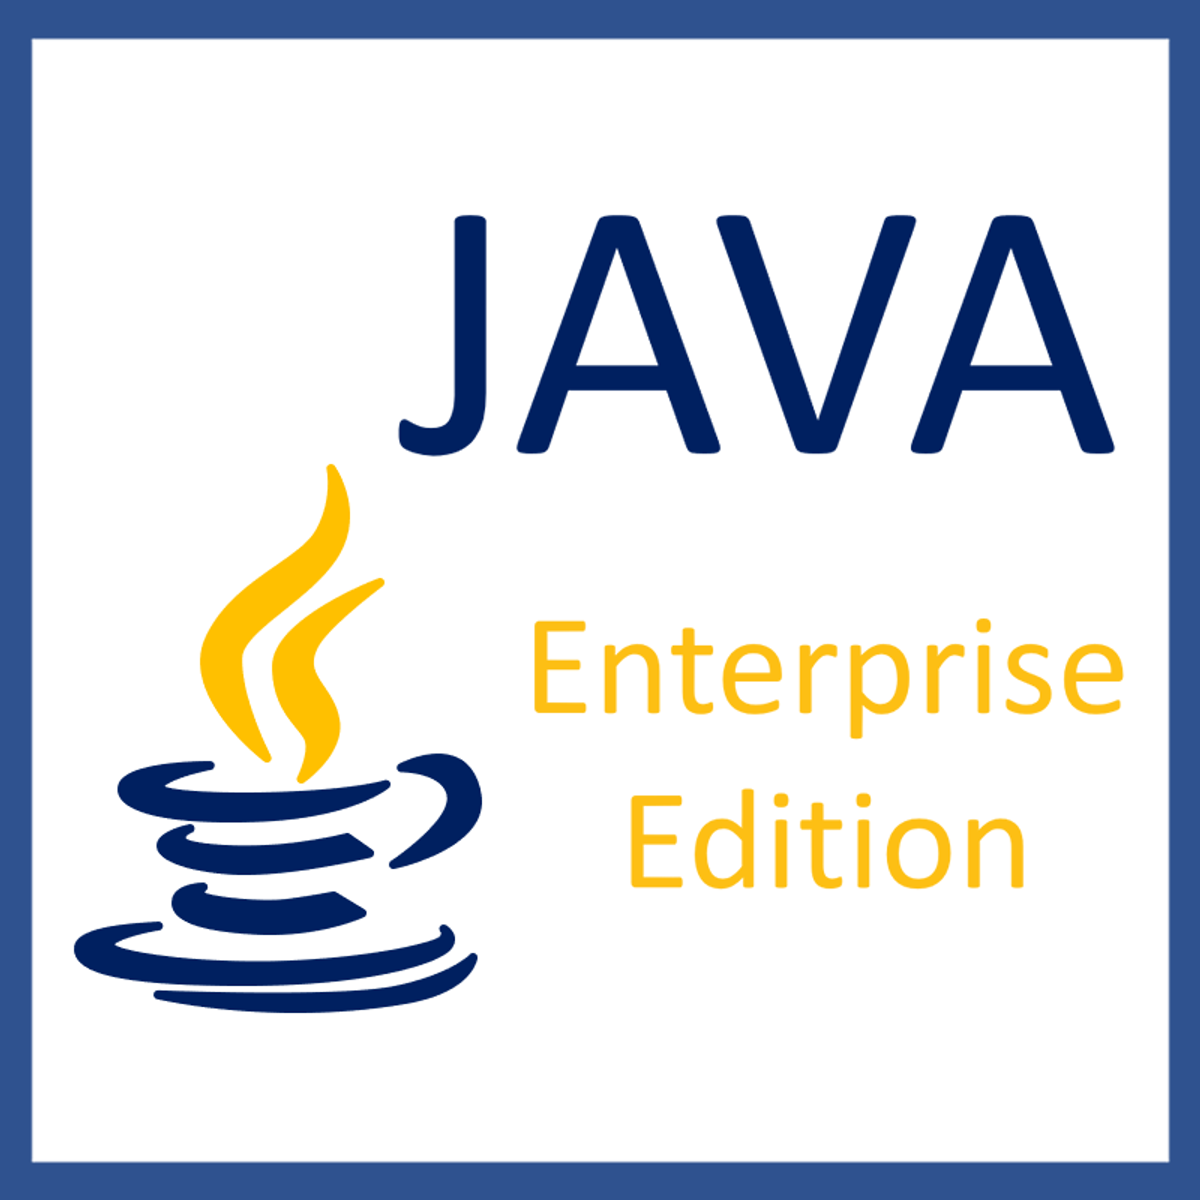 مقدمه ای بر Java Enterprise Edition (EE)